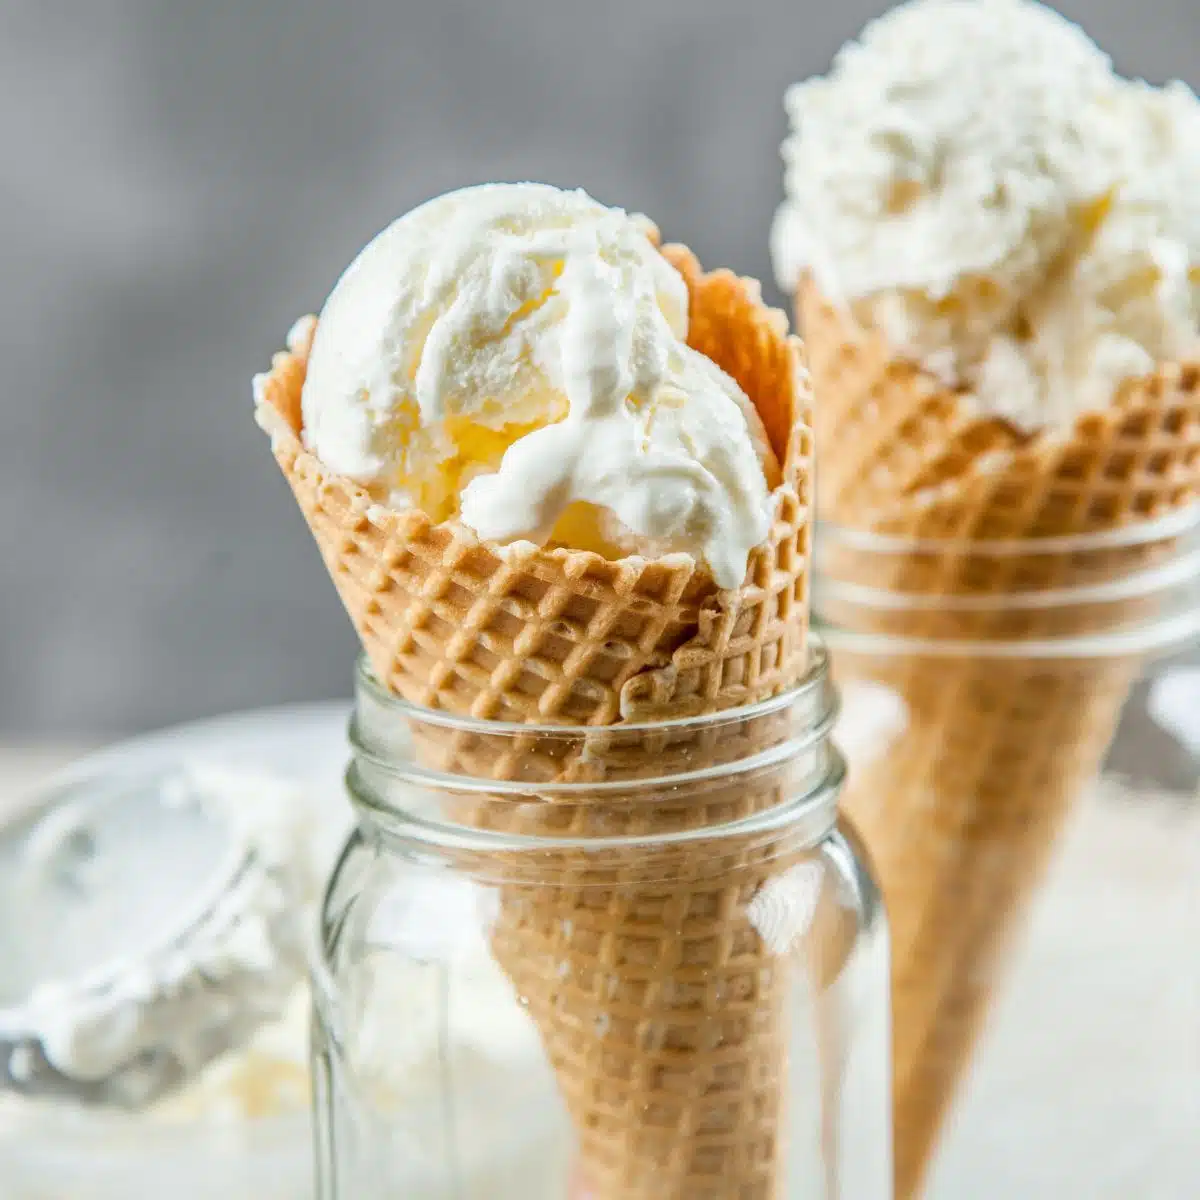 Čtvercový obrázek vanilkové zmrzliny bez stáčení v kornoutu zmrzliny.